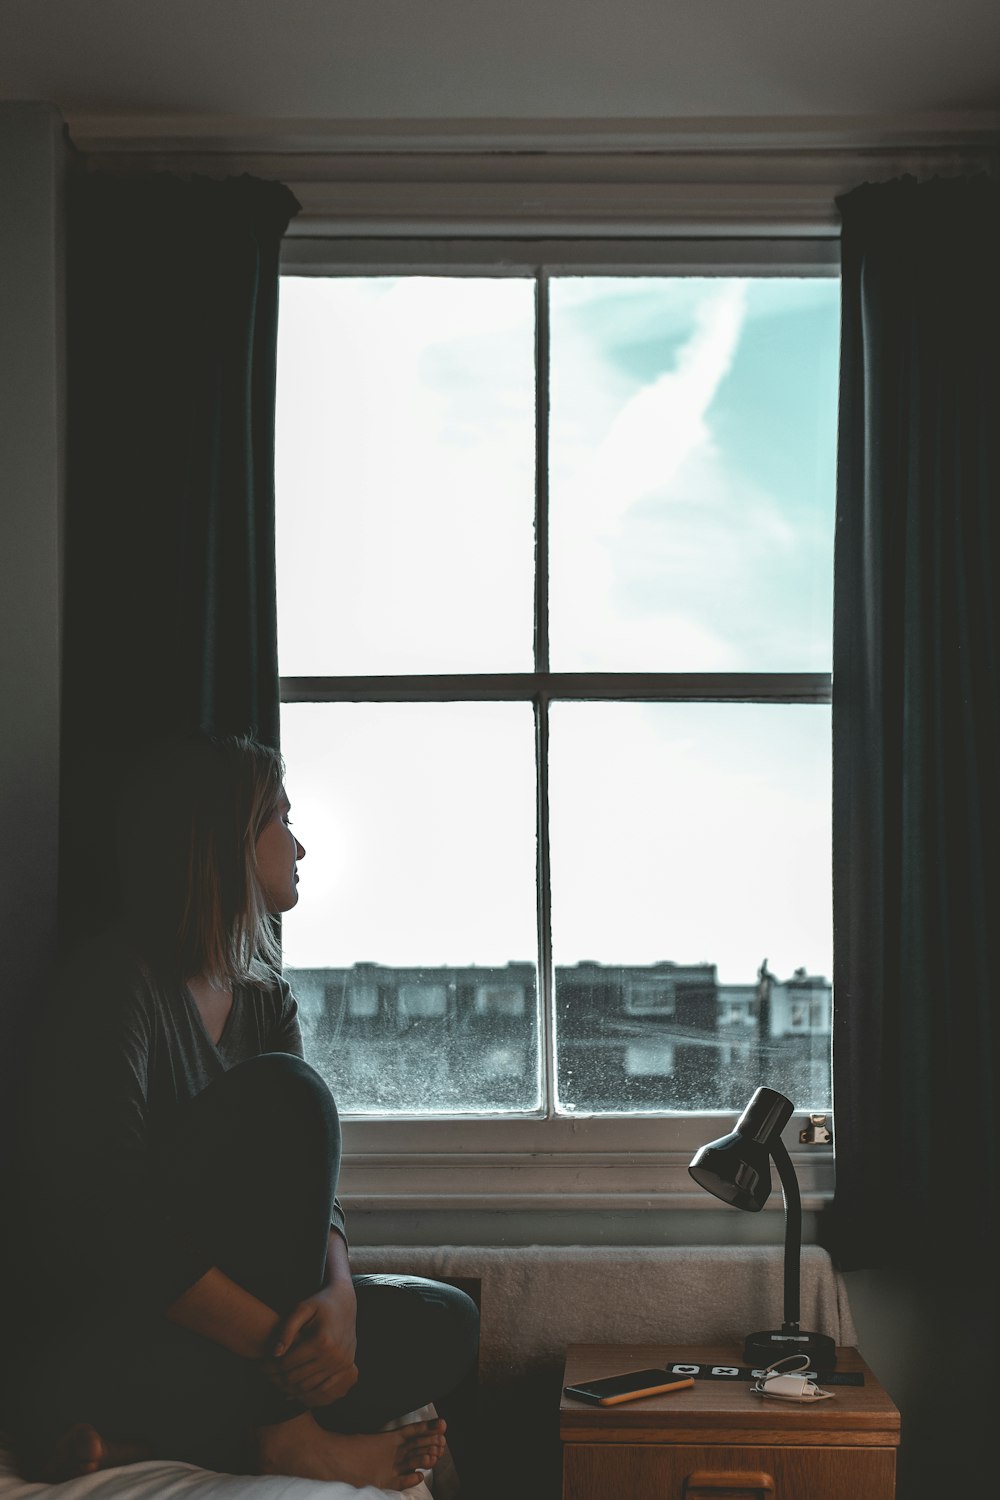 mulher usando leggings pretas sentada ao lado da janela